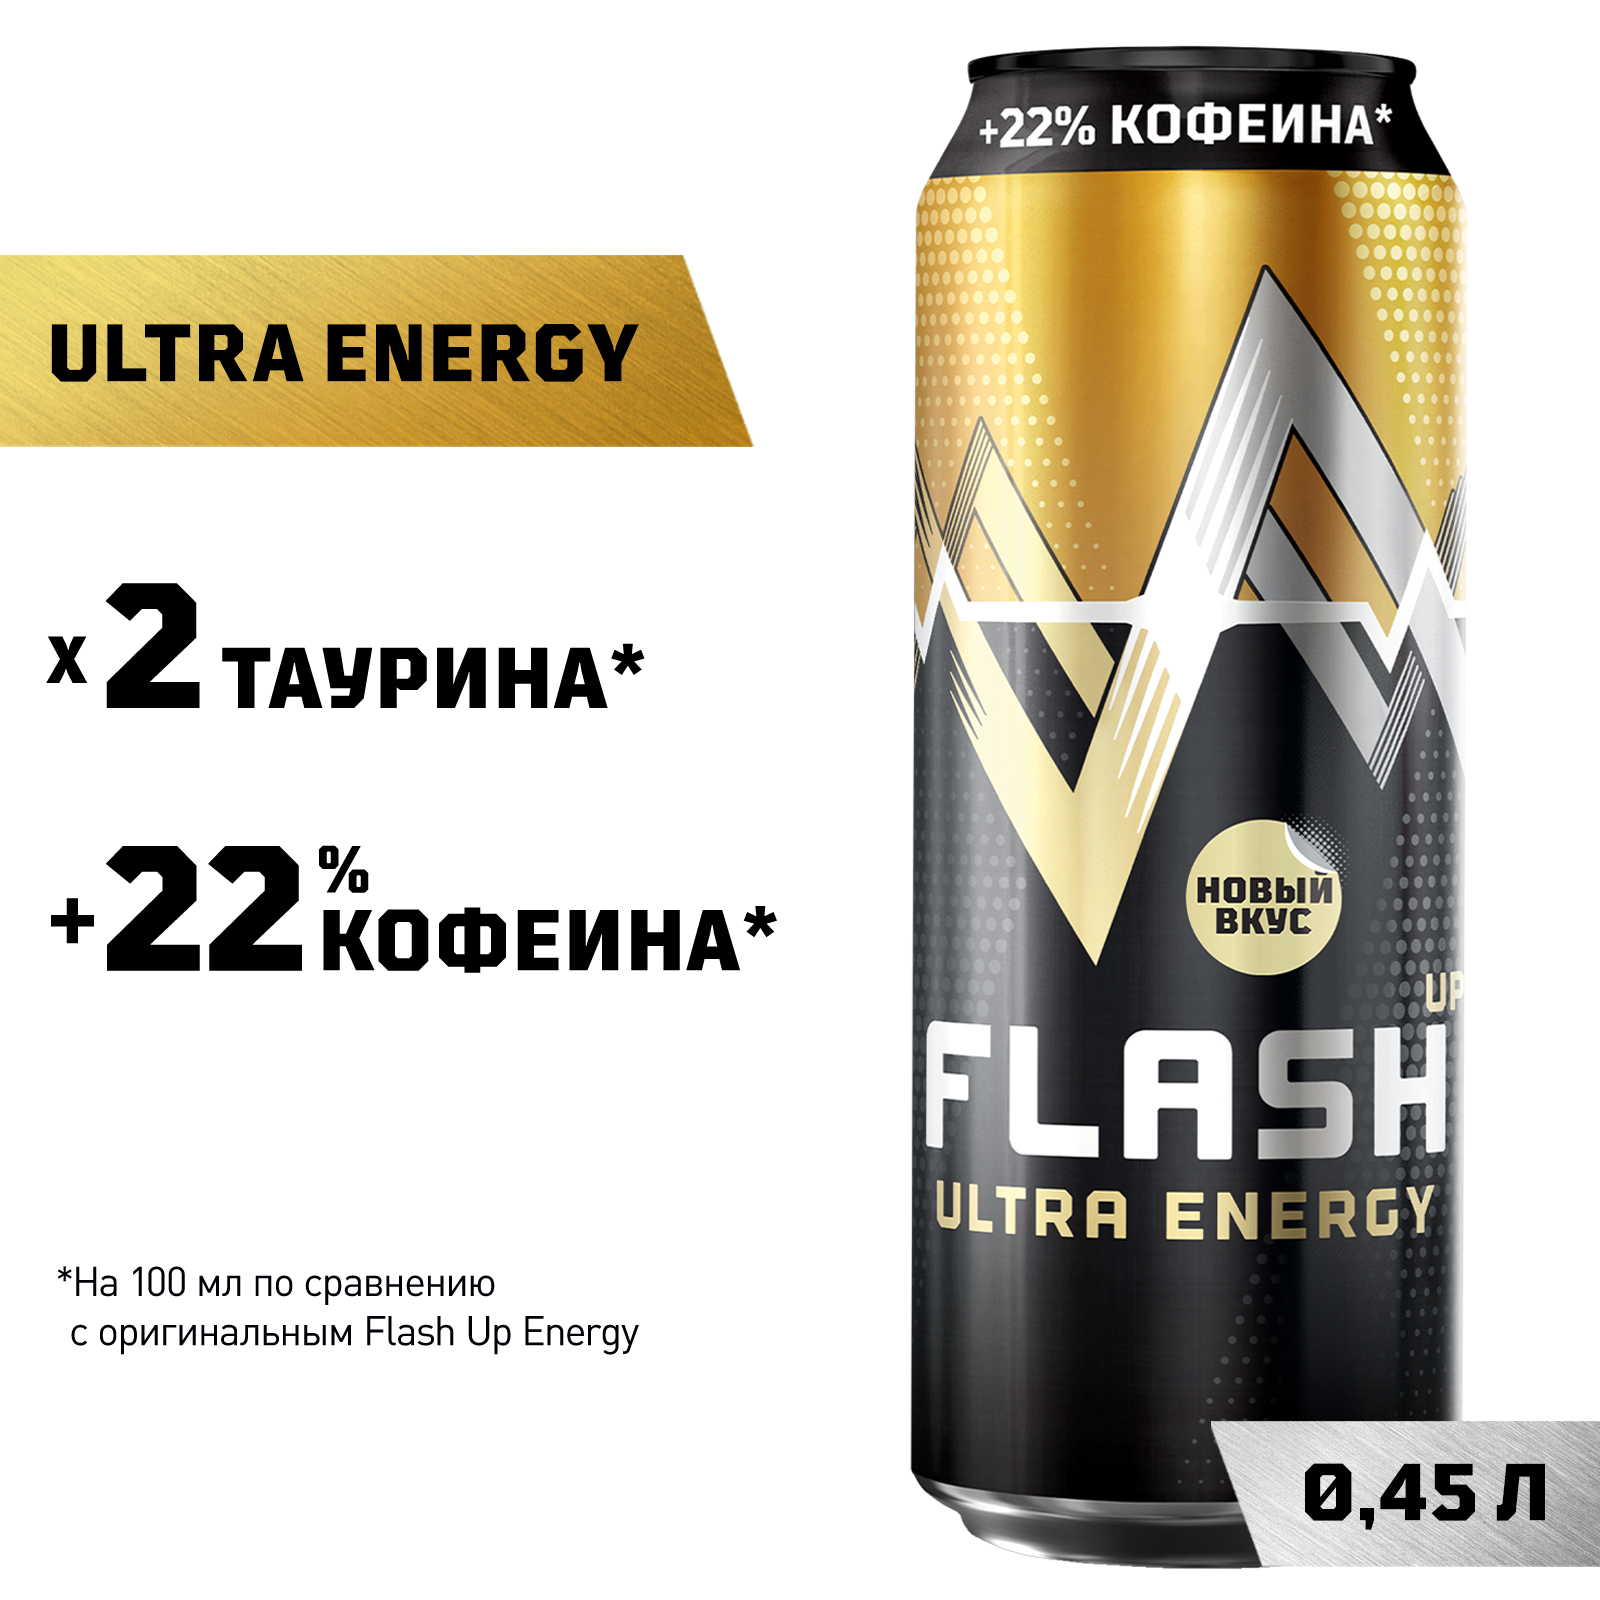 Купить энергетический напиток Flash Up Ultra Energy 0,45 л, банка, цены на Мегамаркет | Артикул: 100031005180